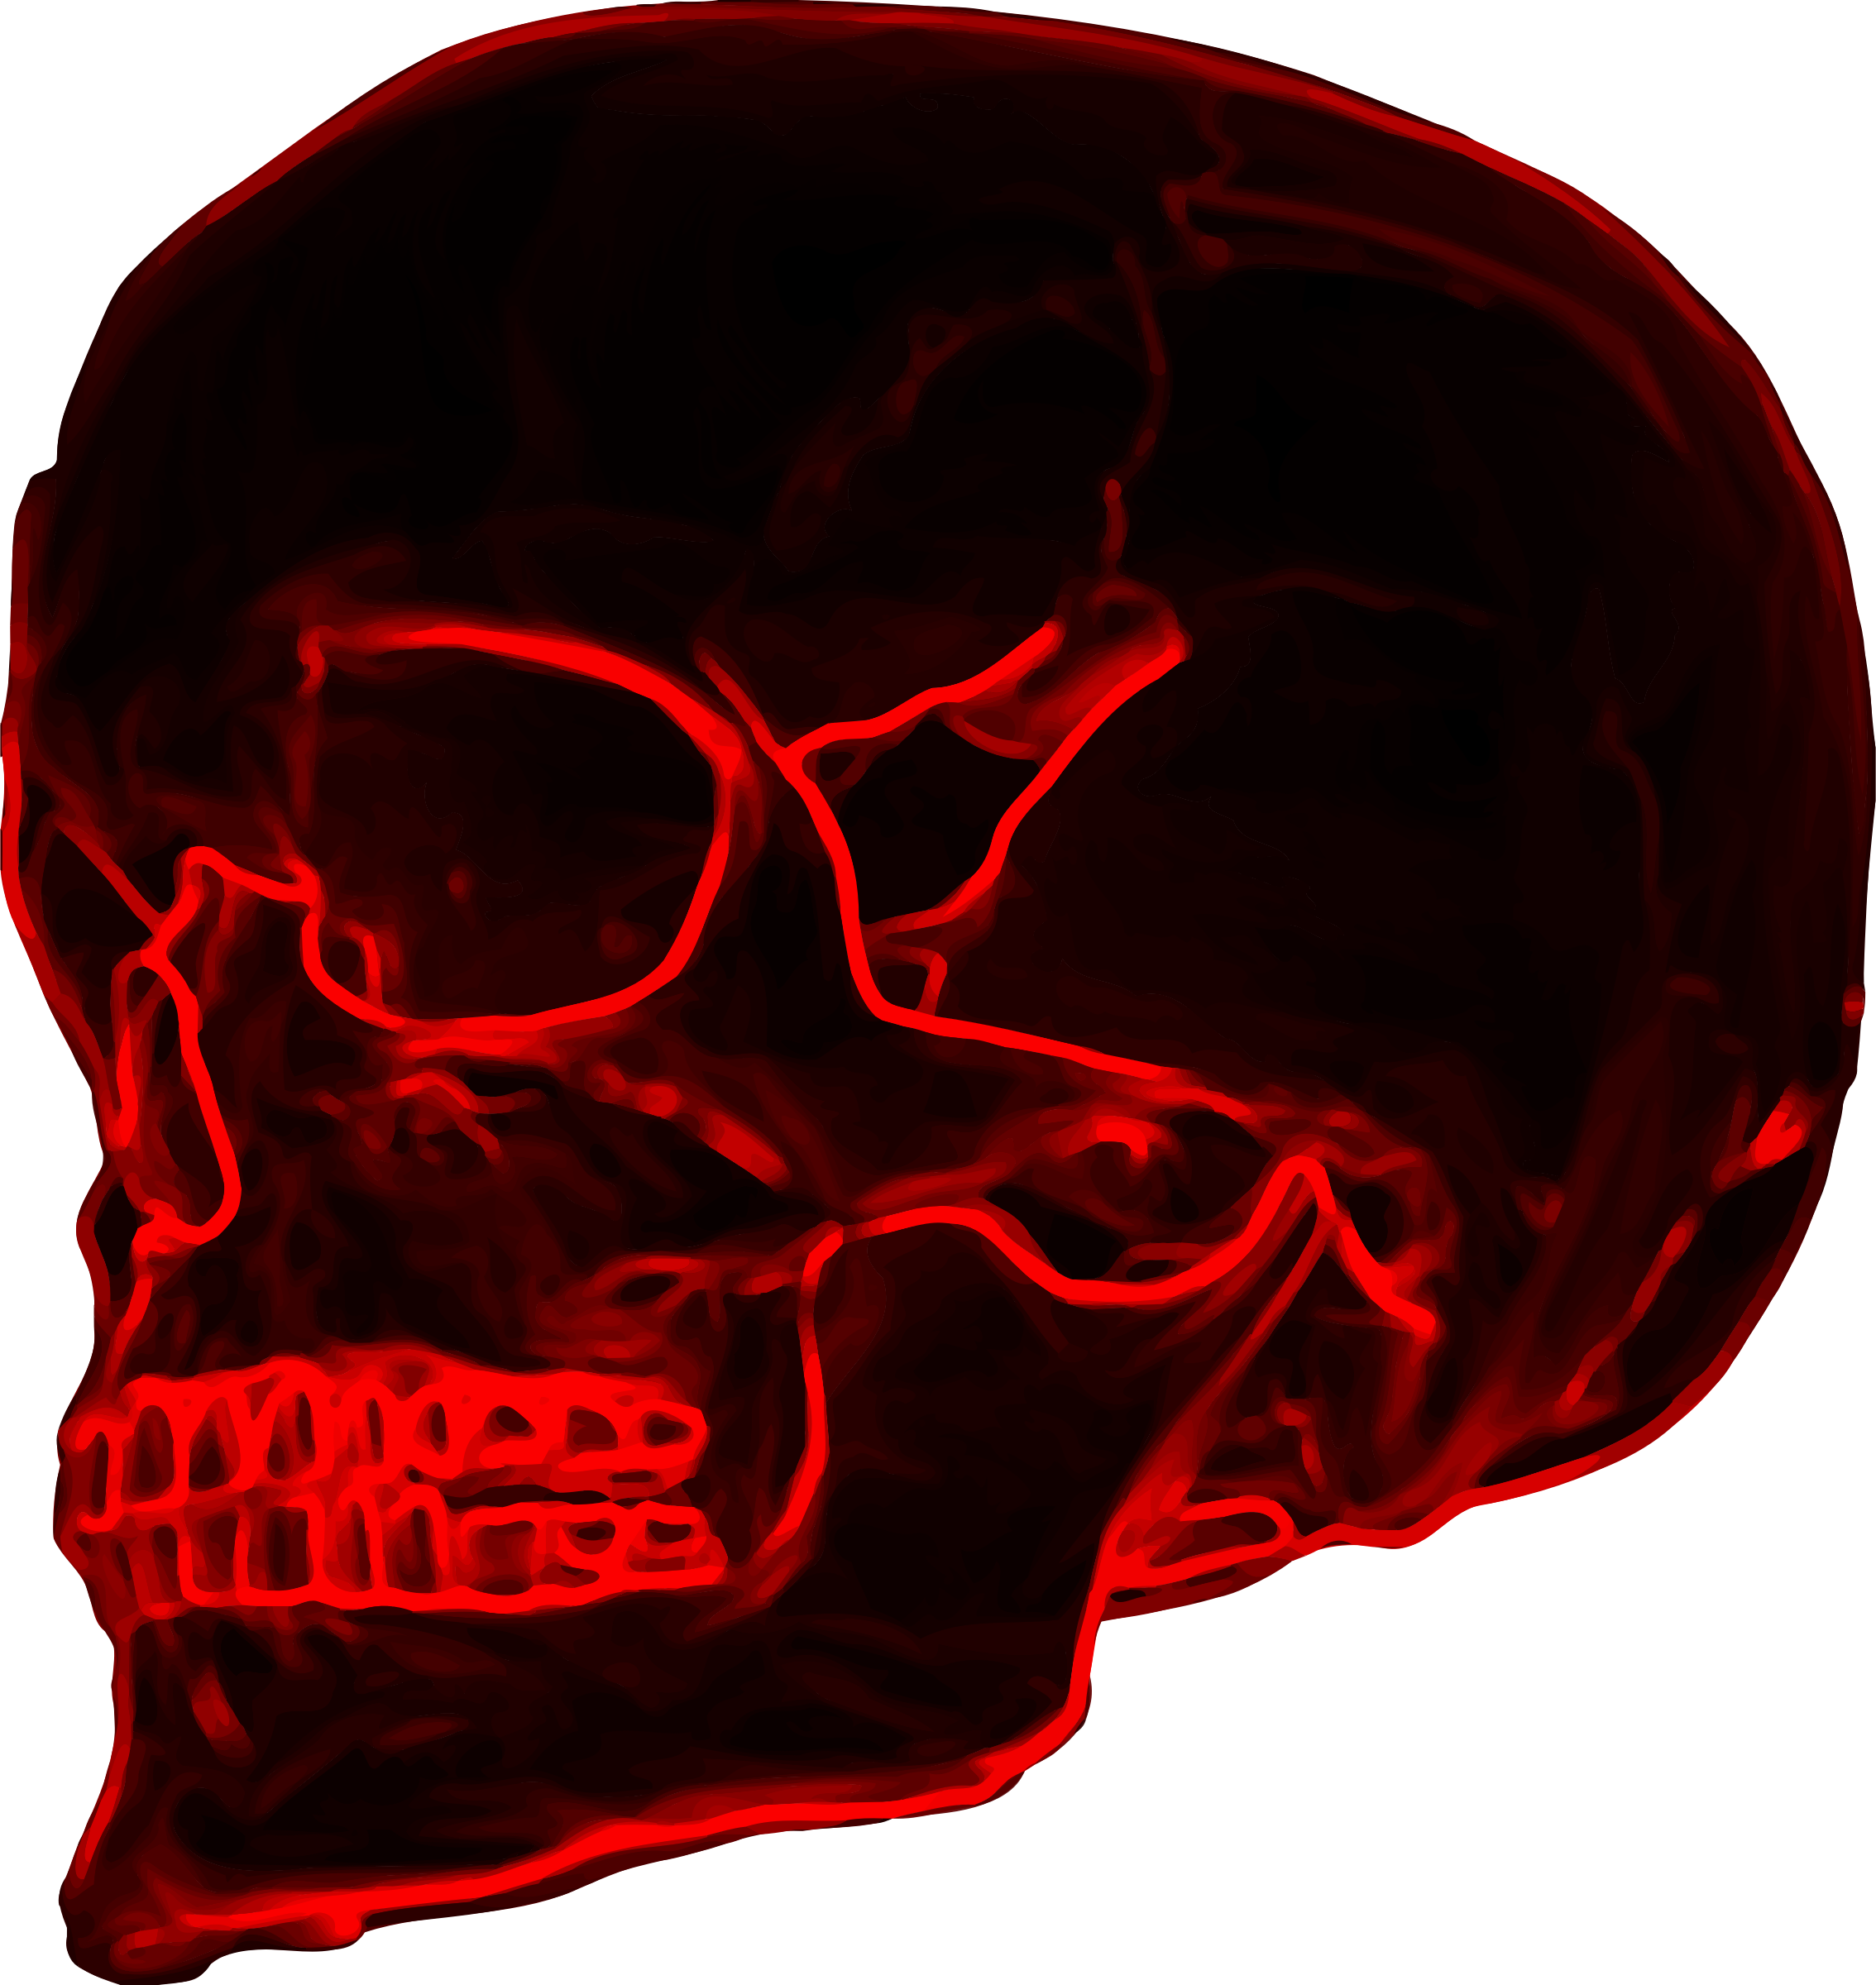 Skeleton skeleton neck